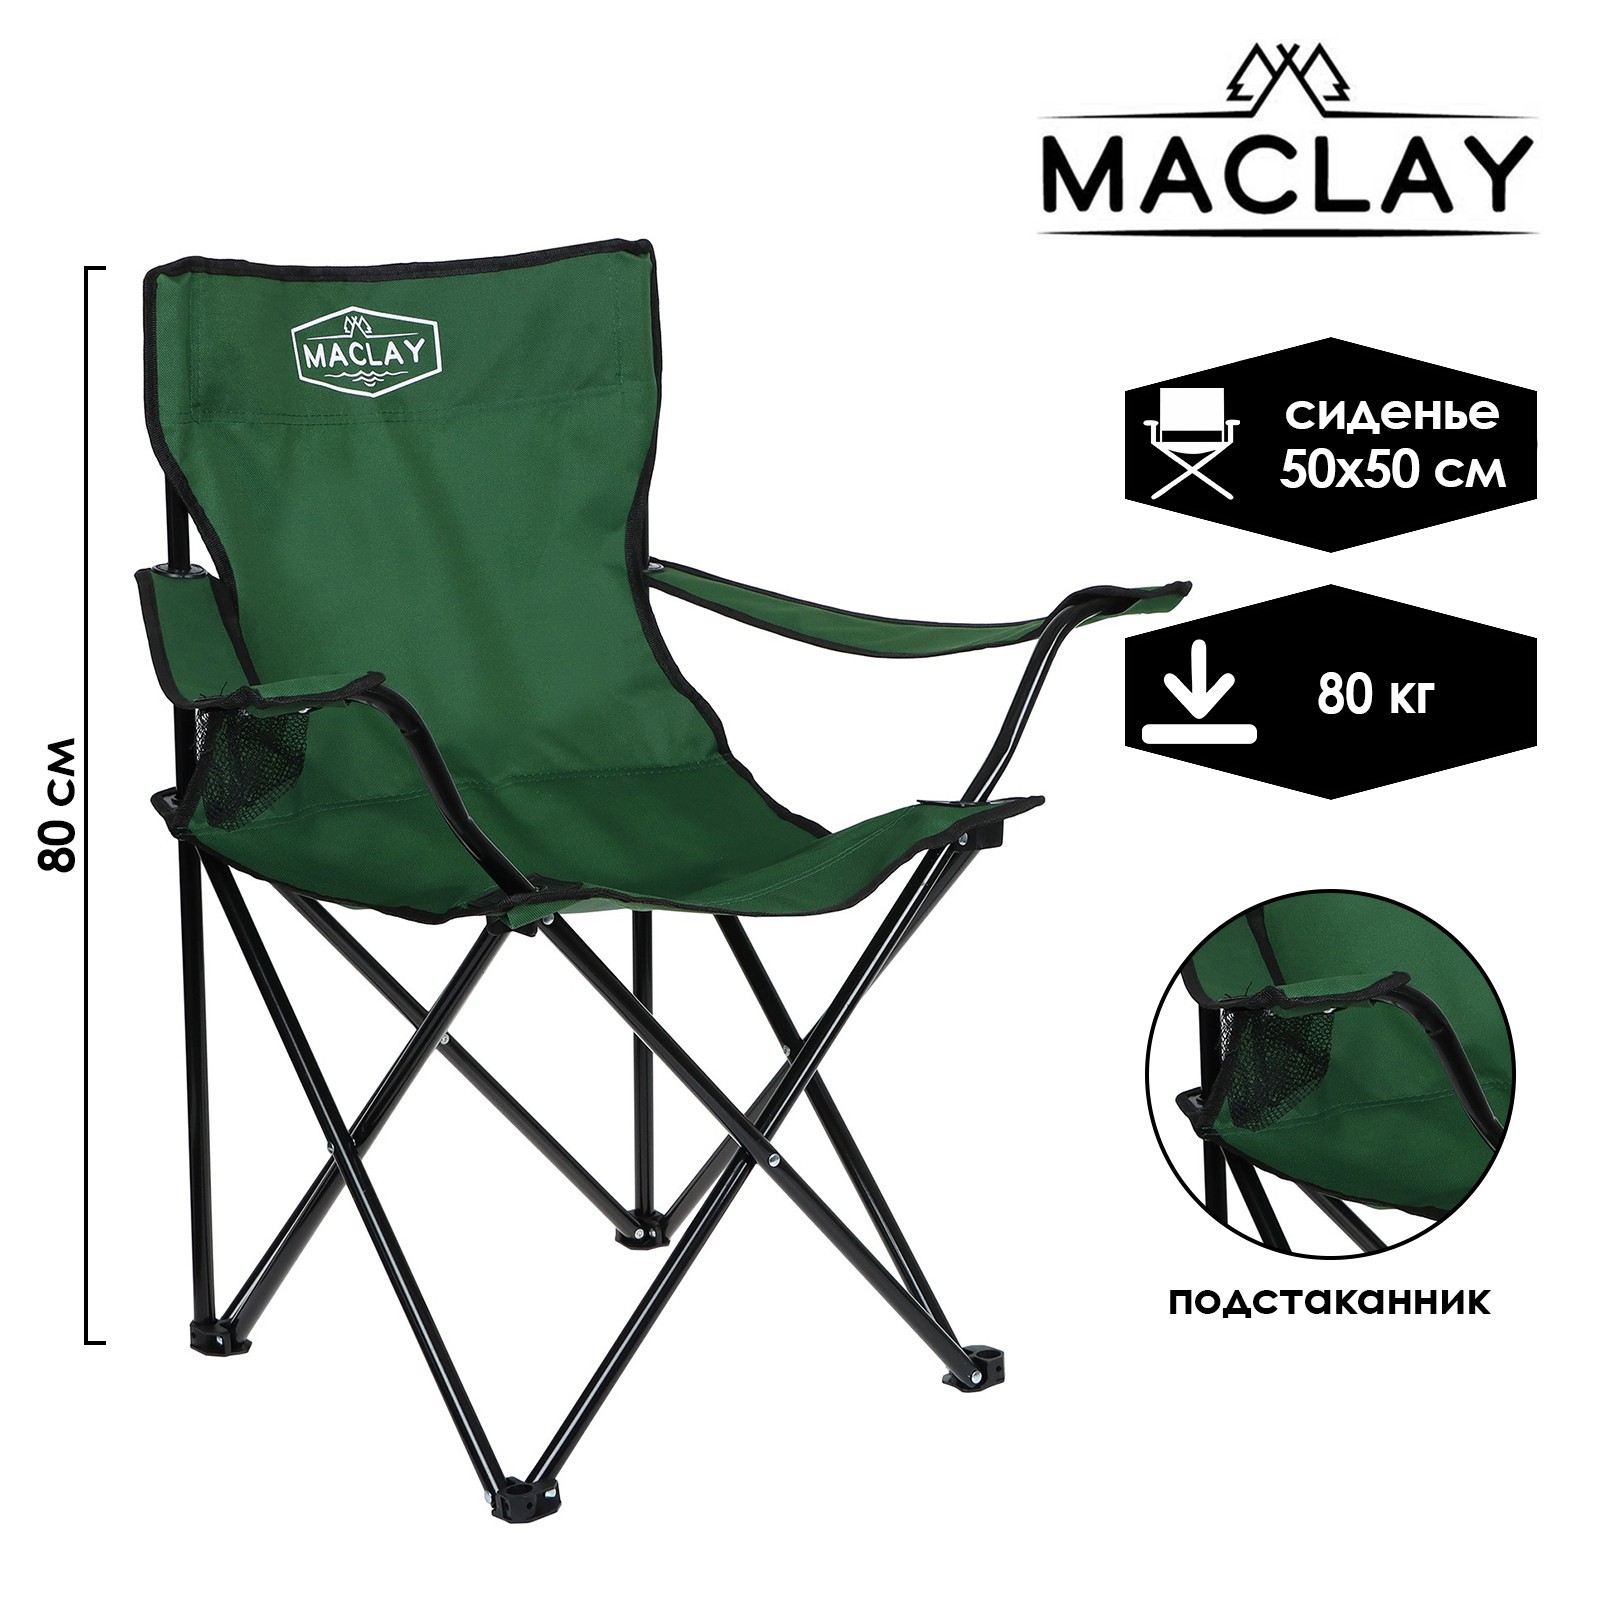 Кресло Maclay туристическое с подстаканником р. 50 х 50 х 80 см до 80 кг цвет зелёный - фото 1